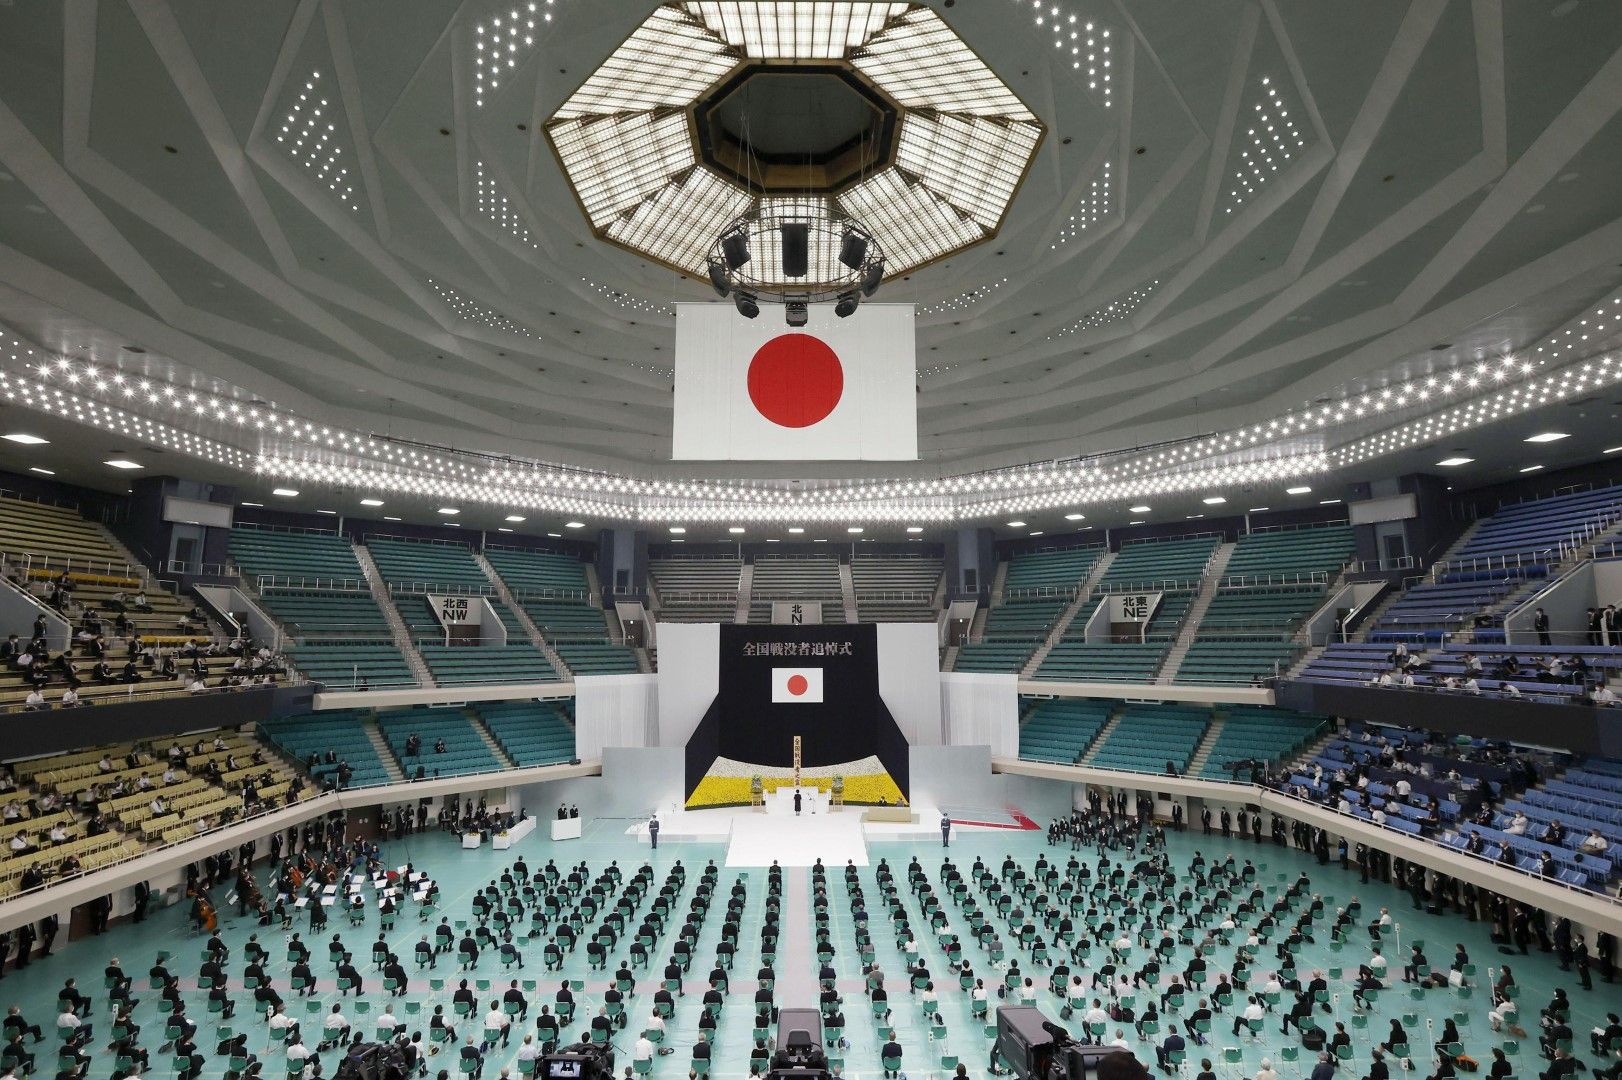 Церемонията в зала "Нипон будокан" в Токио, Япония, по повод 75-годишнината от капитулацията на страната във Втората световна война, беше проведена при строги ограничения